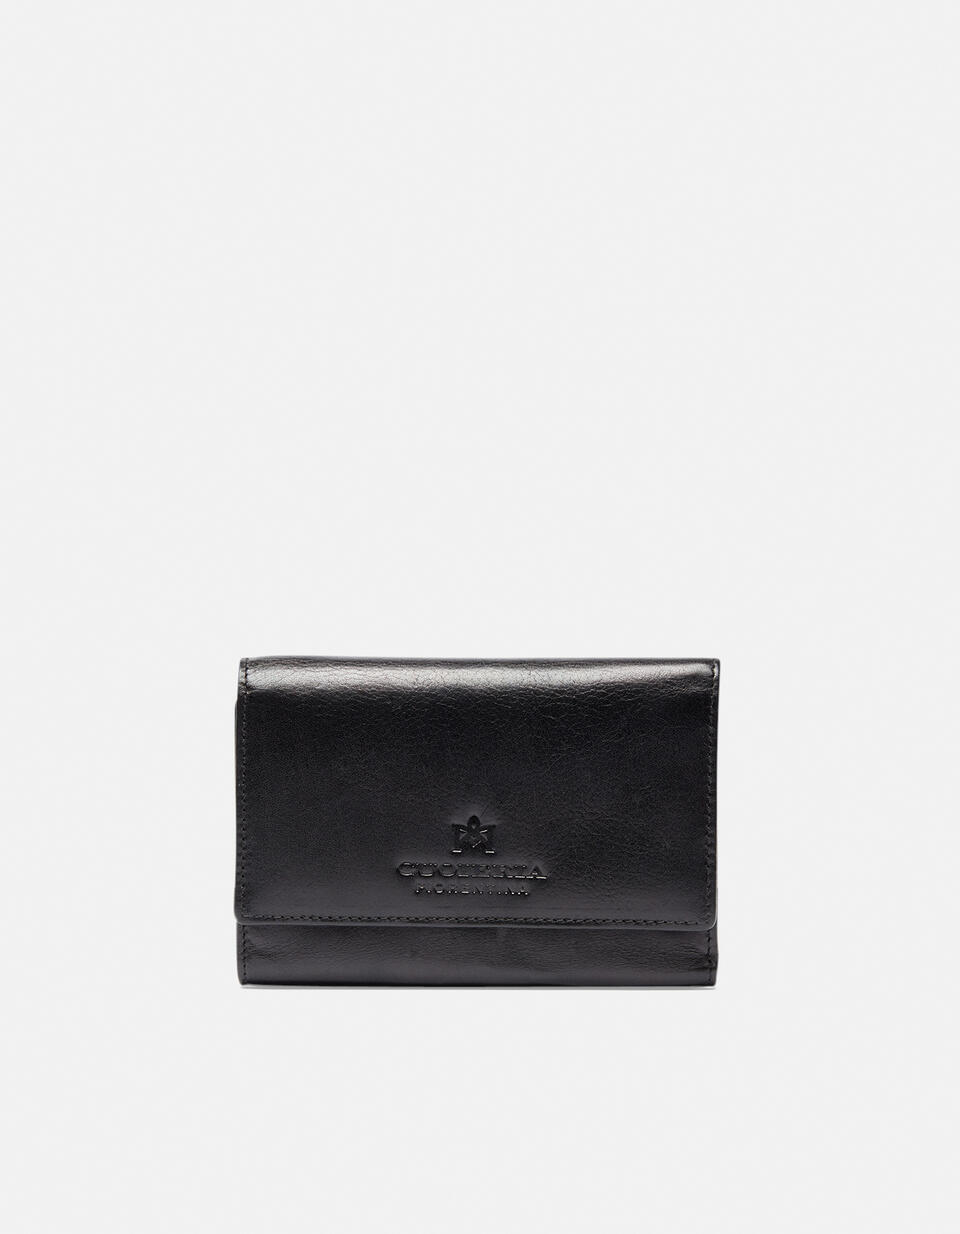 Leather wallet - Women's Wallets - Women's Wallets | Wallets  - Women's Wallets - Women's Wallets | WalletsCuoieria Fiorentina